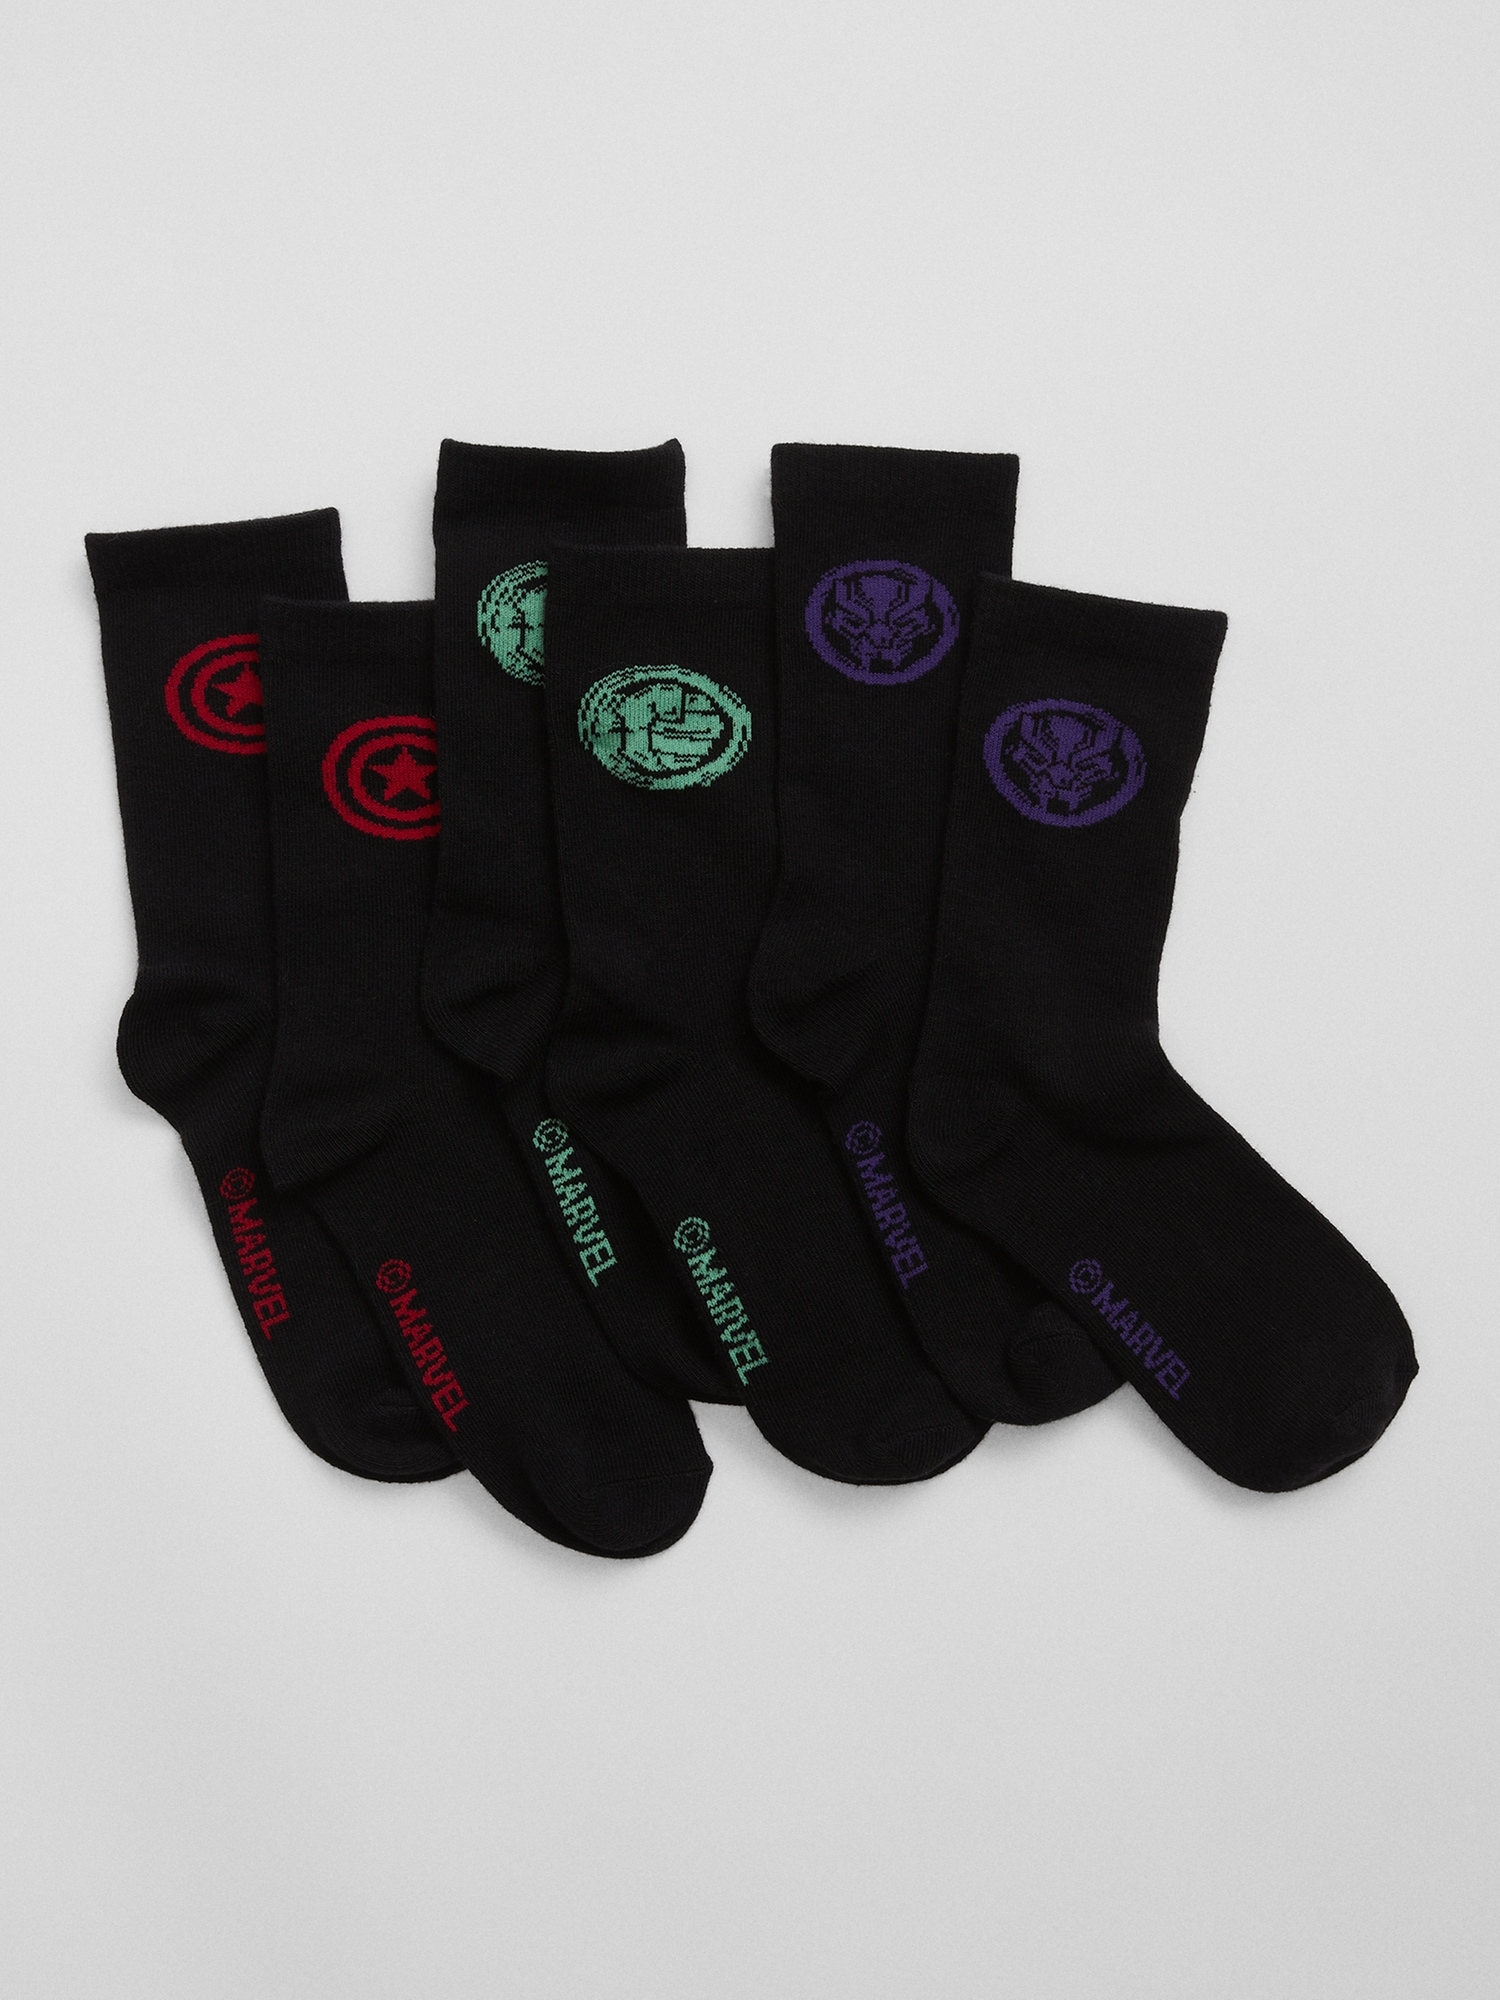 Marvel Avengers pack 5 socks